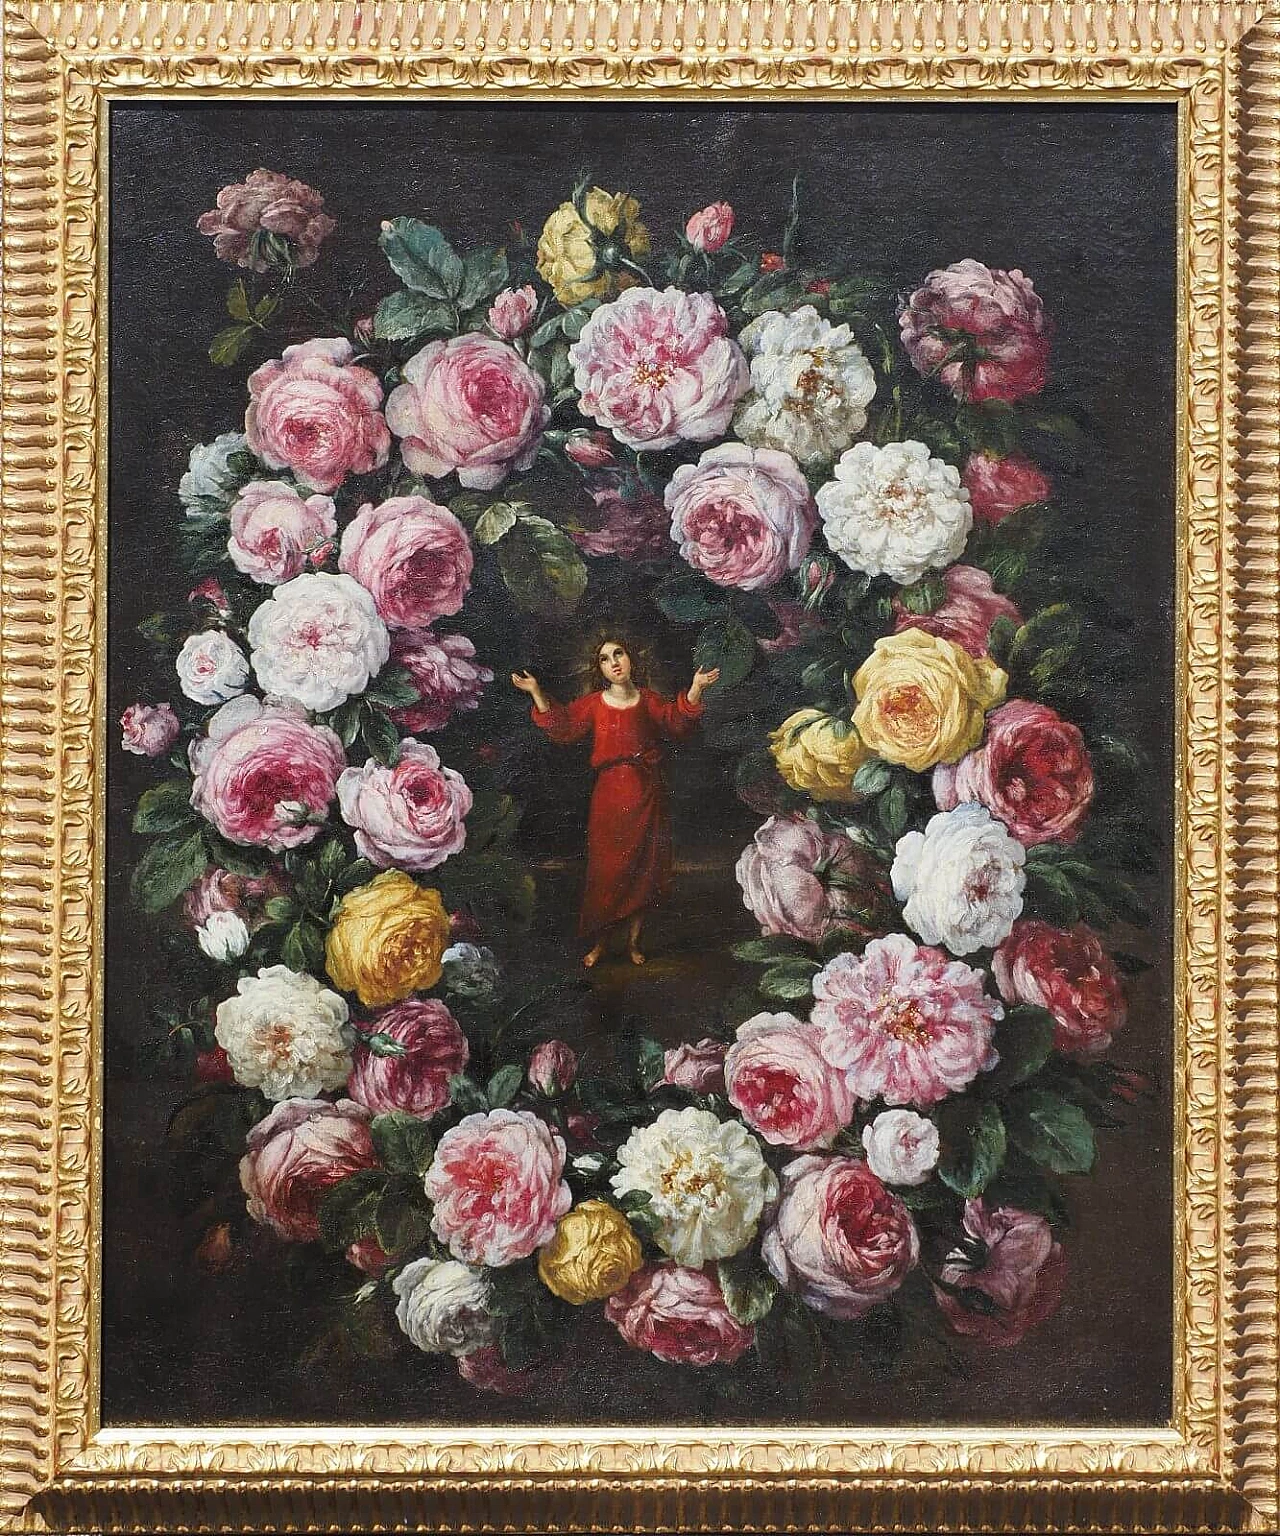 Ghirlanda di fiori con Gesù Fanciullo, dipinto a olio su tela attribuito a Pier Francesco Cittadini, '600 1